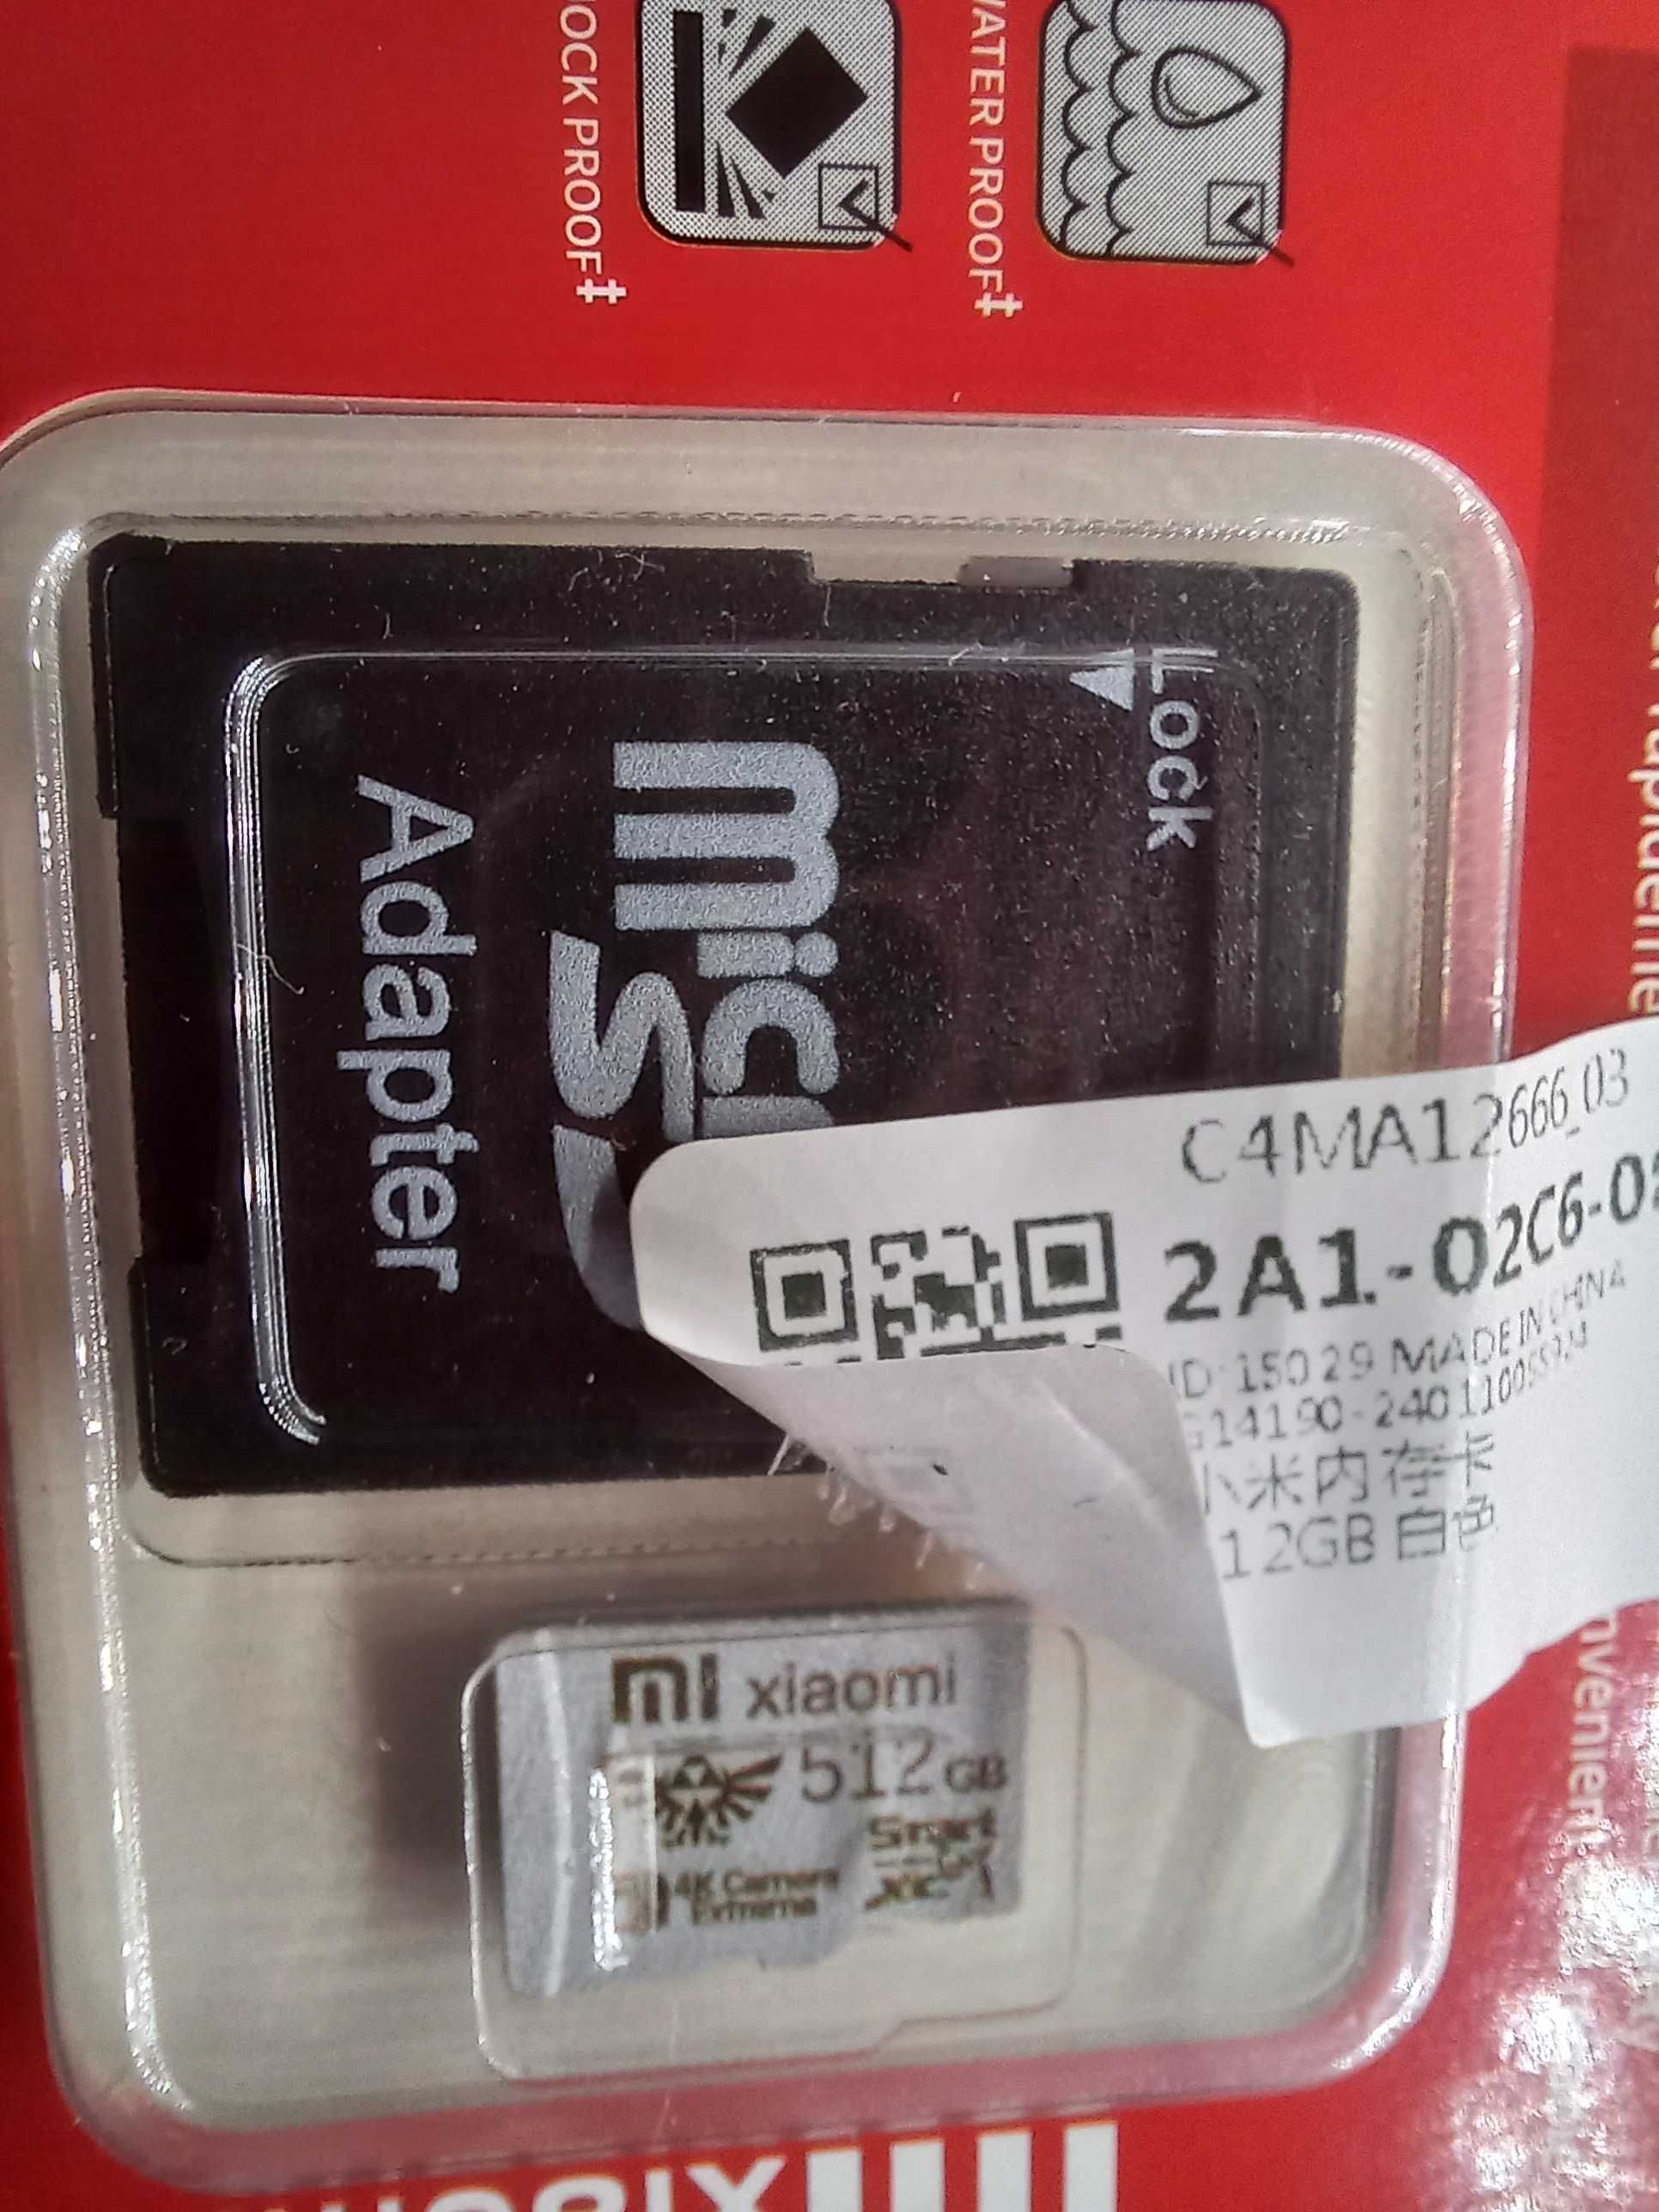 Karta pamięci XIAOMI Micro SD XC 512 GB;